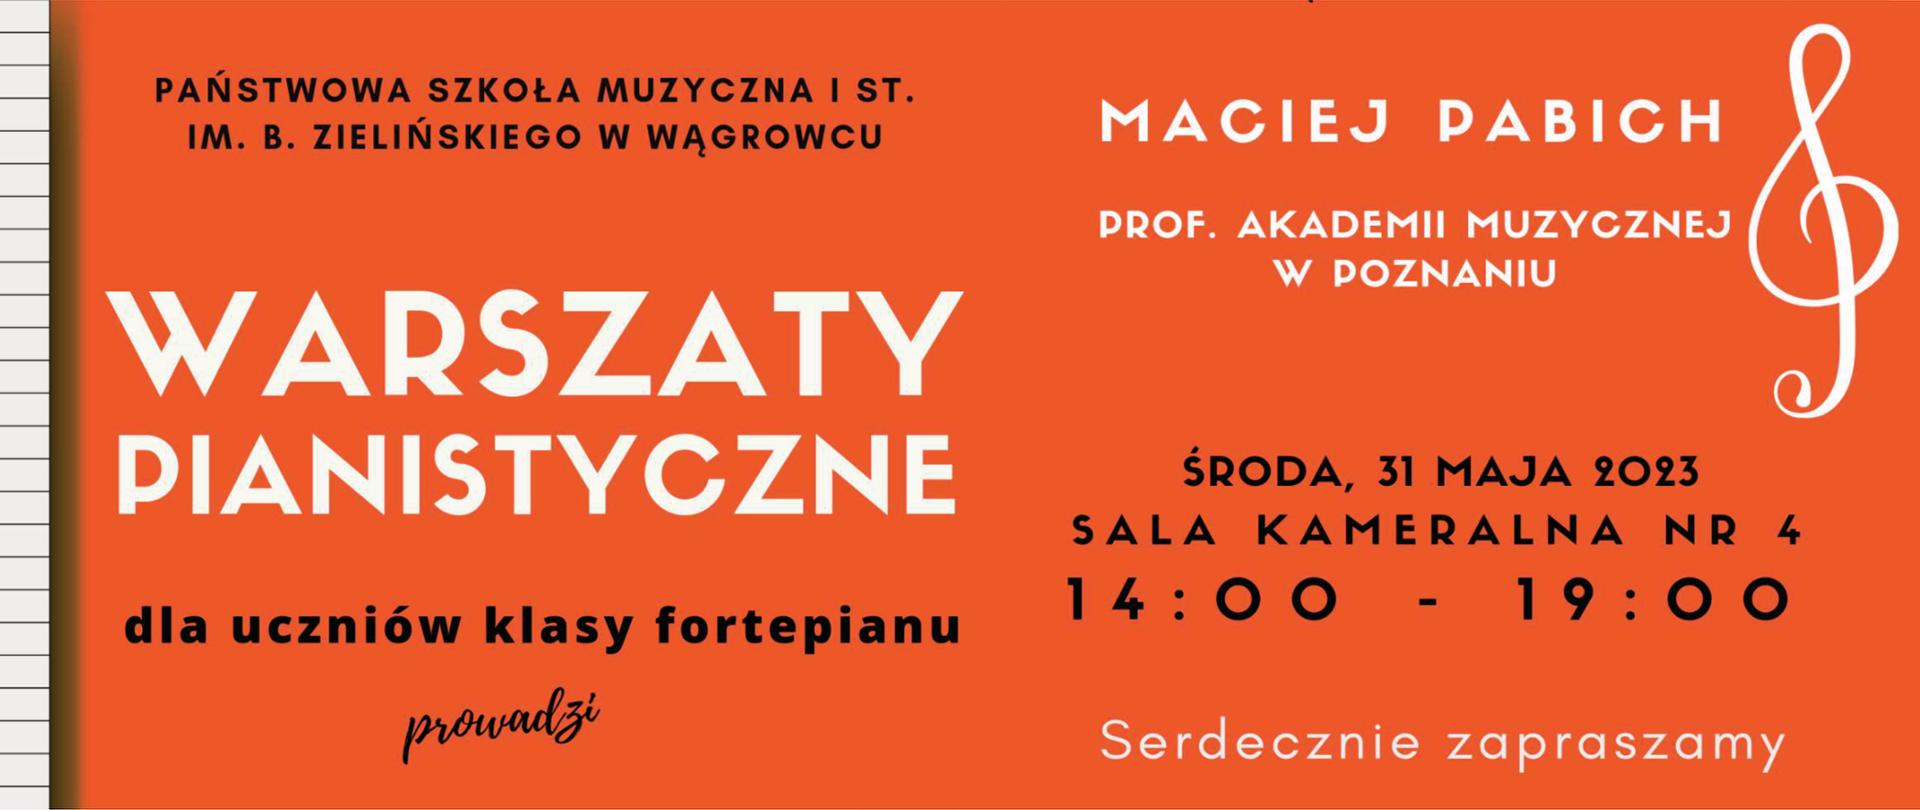 Na banerze znajduje się fragment klawiatury oraz informacje dotyczące warsztatów pianistycznych z Maciejem Pabichem w Państwowej Szkole Muzycznej I st. w Wągrowcu